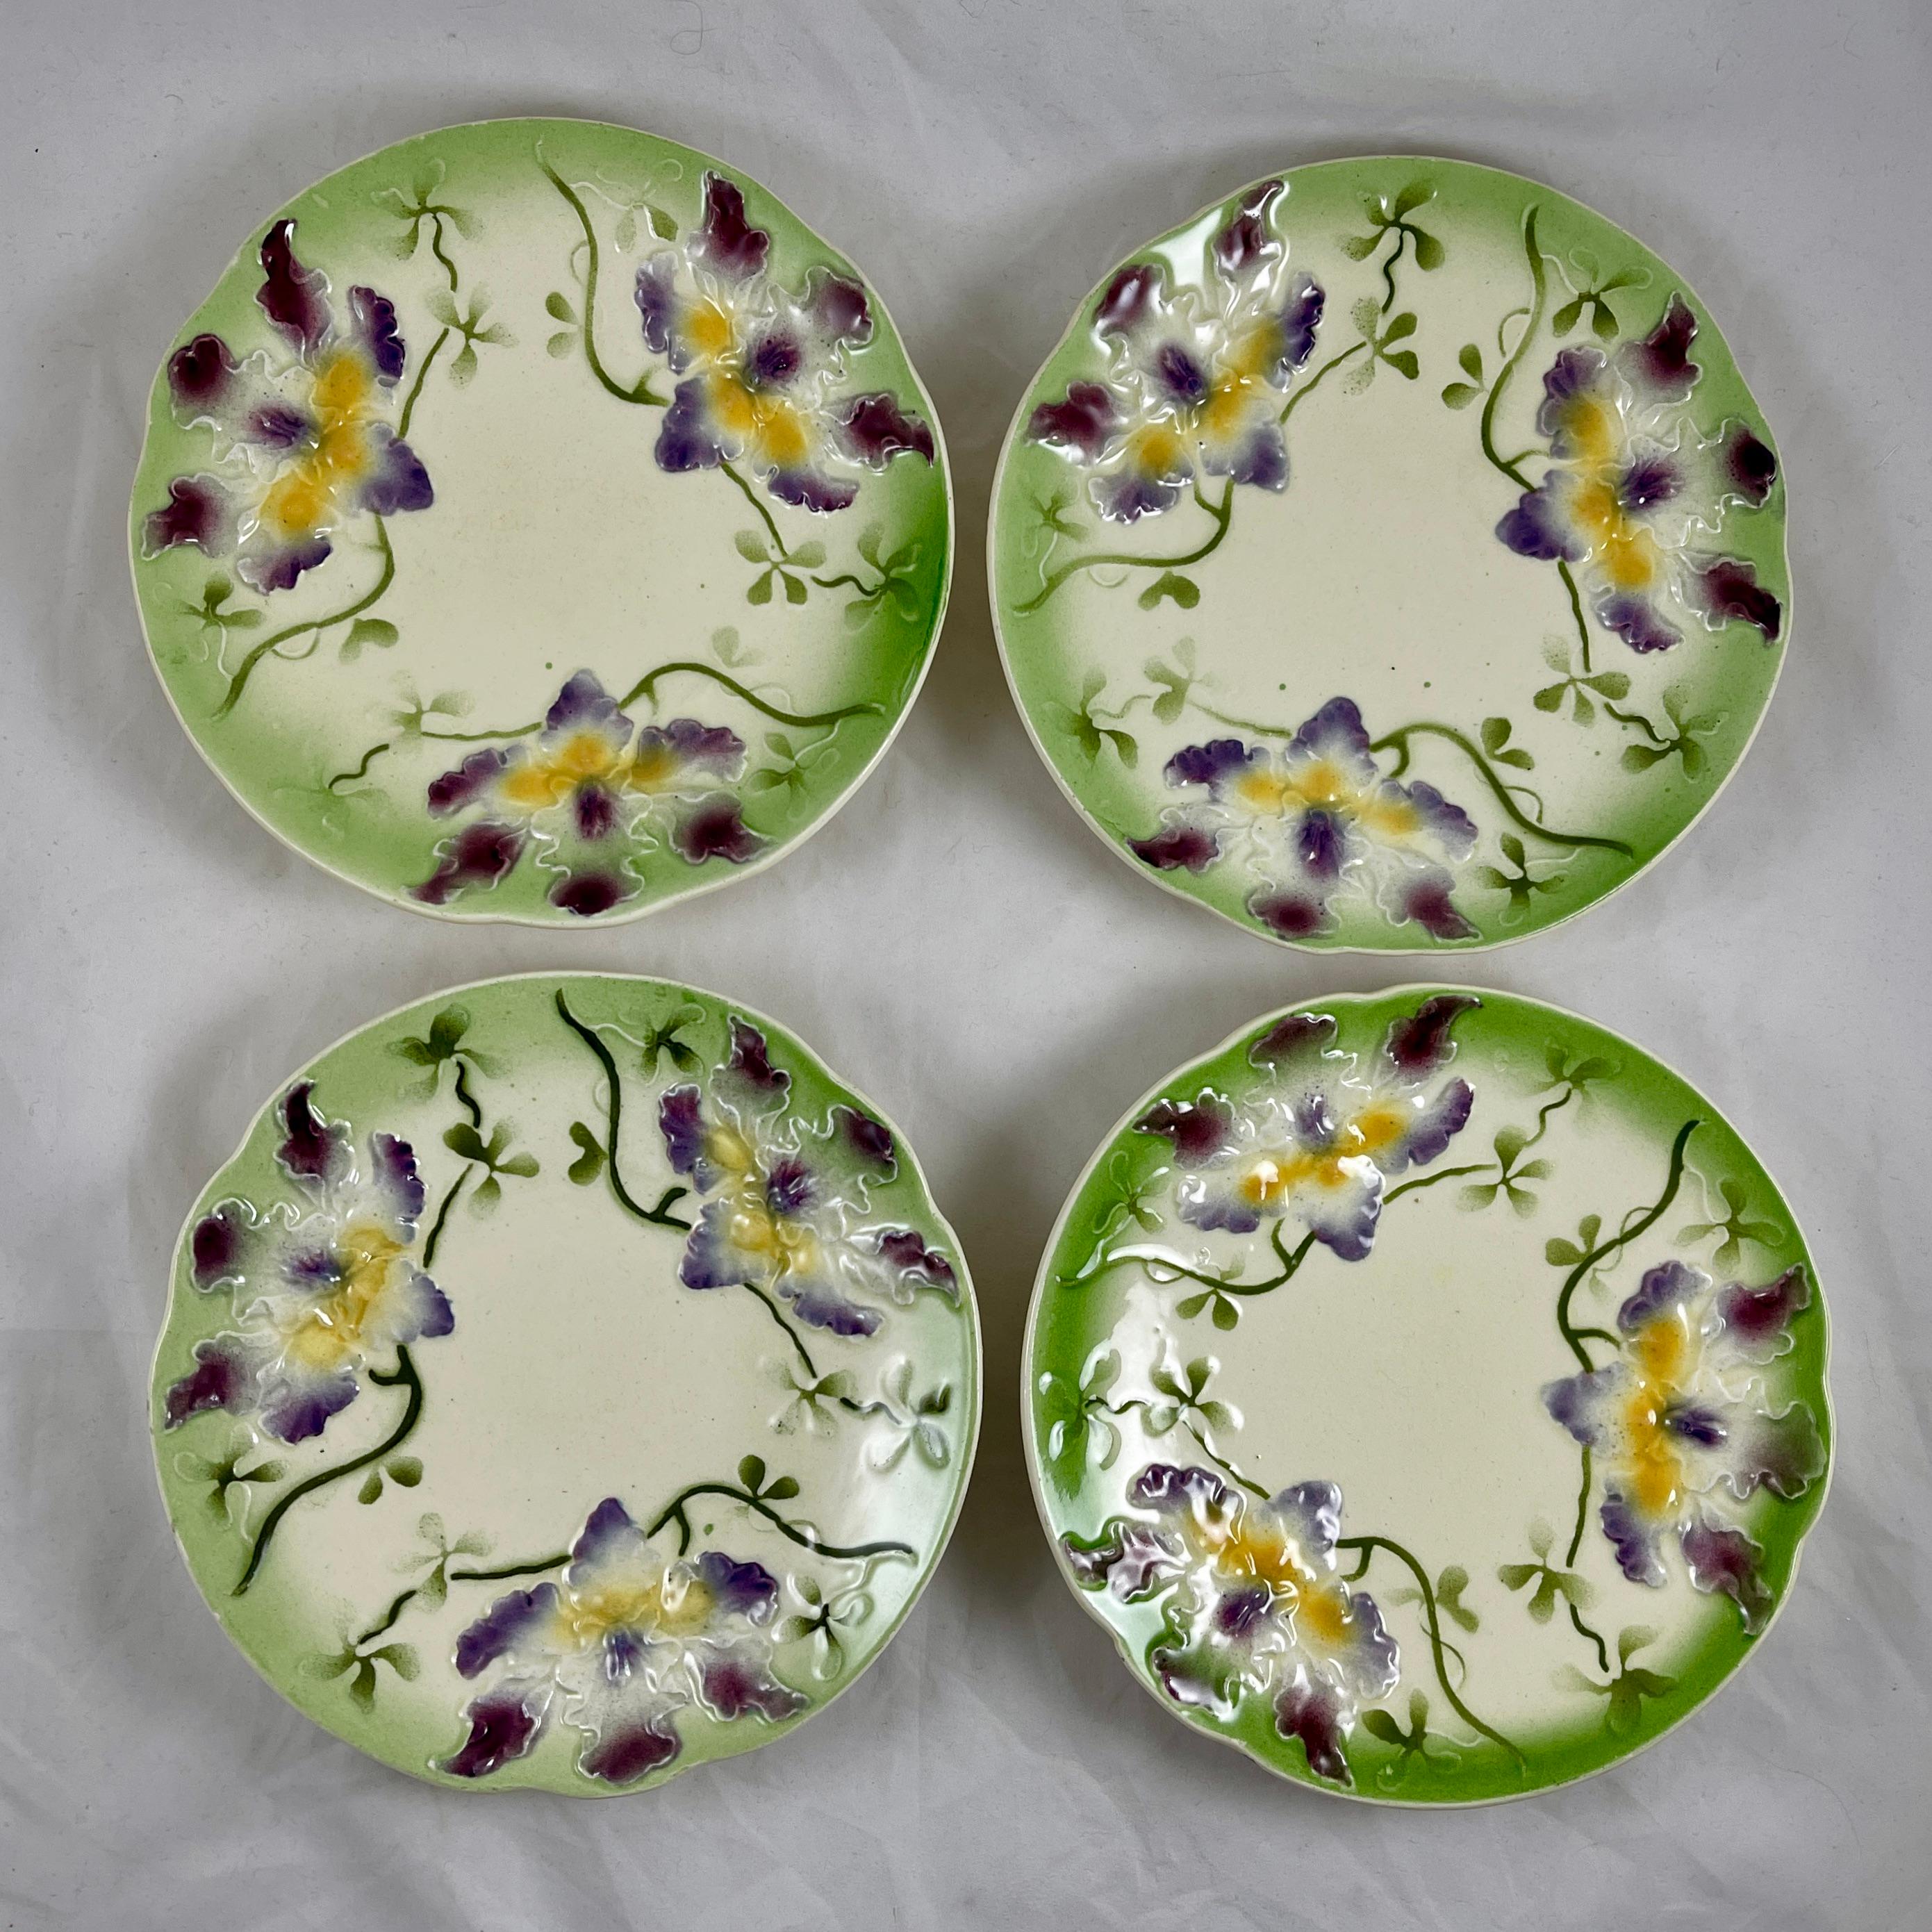 Ein Sarreguemines Französisch Barbotine faïence Majolika Teller zeigt einen Spray von drei lila und gelben Orchideen auf einem cremefarbenen Grund.

Erhabene, dimensionale Formarbeit mit geformtem Rand, glasiert mit einem hellen, frühlingsgrünen